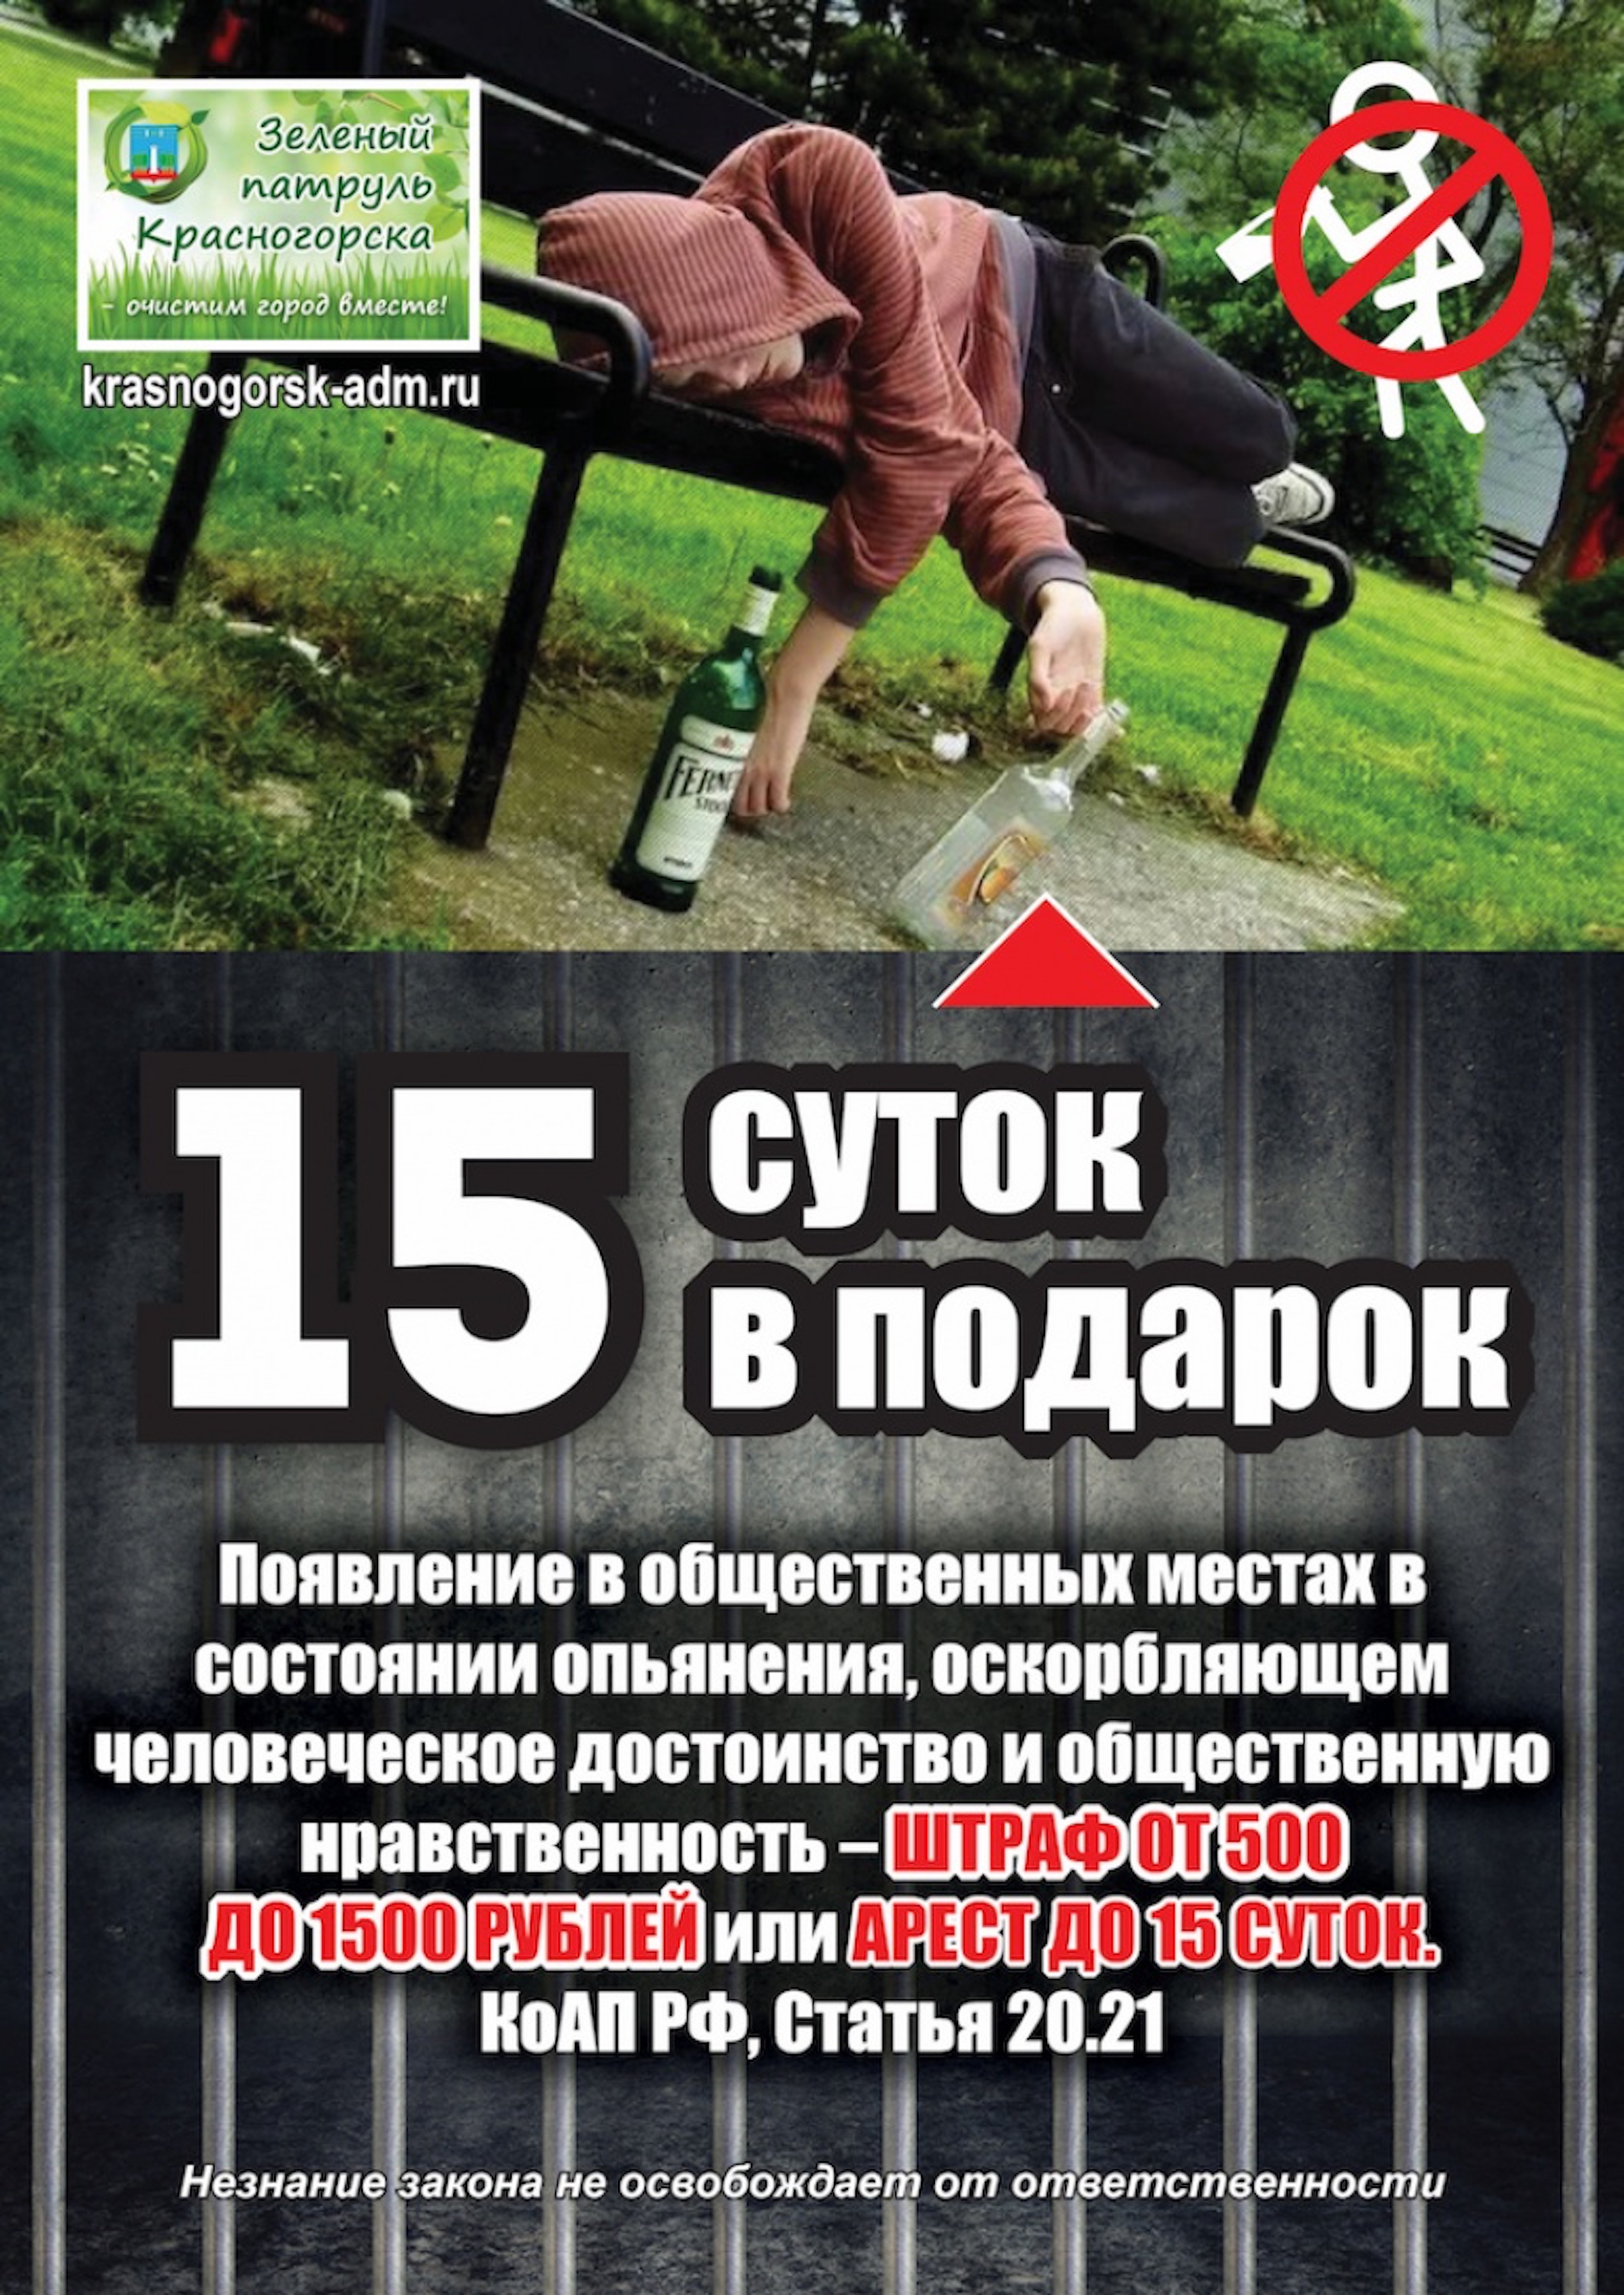 Более 130 штрафов за распитие спиртного  в общественных местах выписали в Красногорске